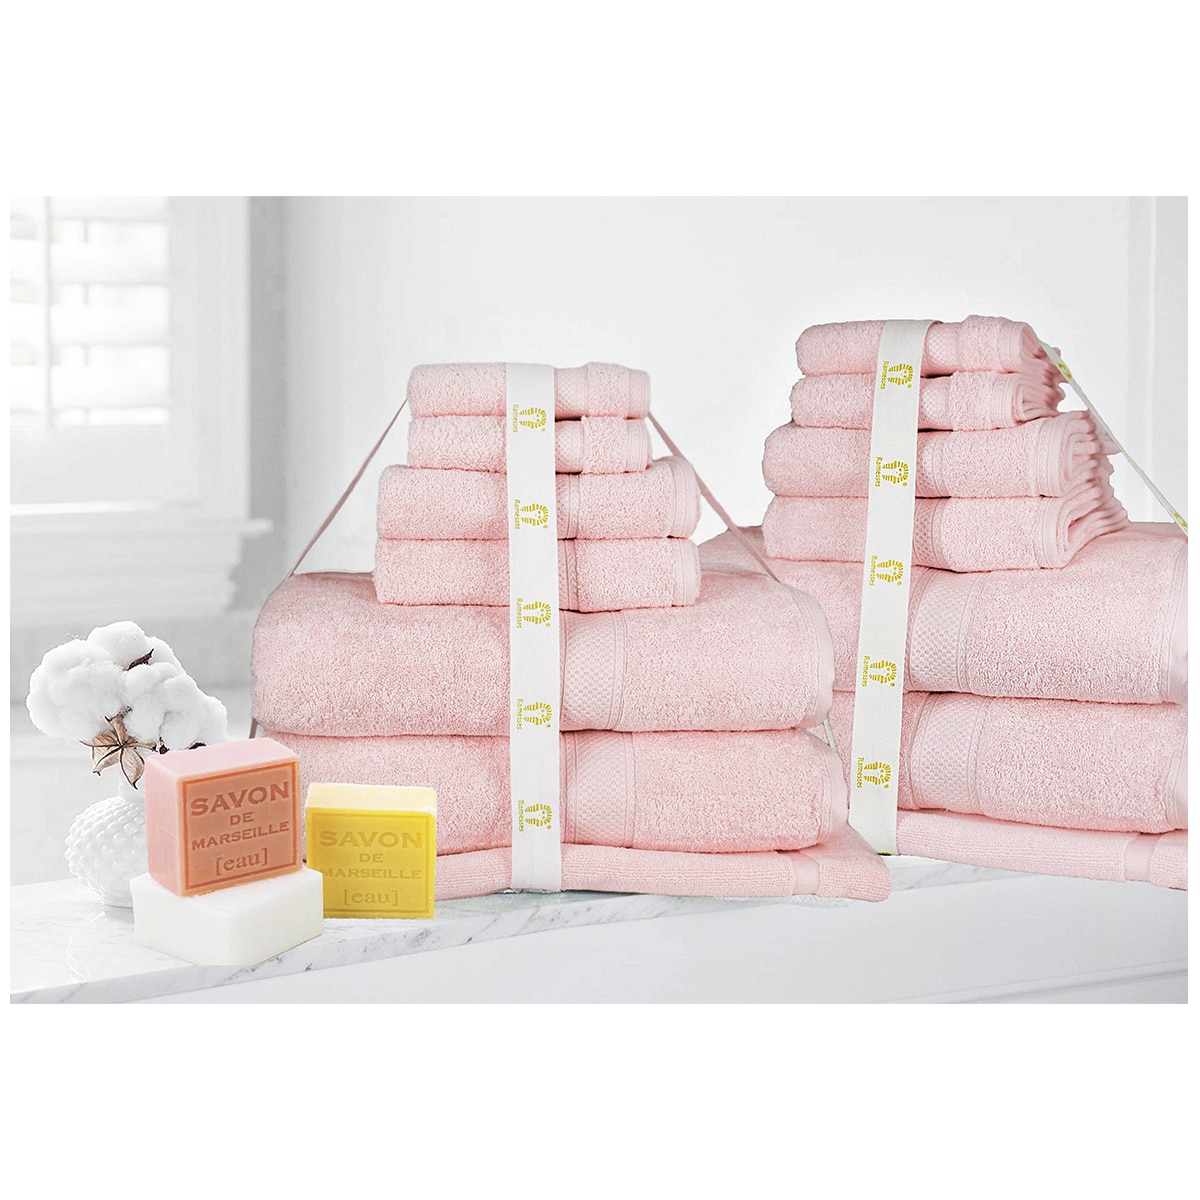 Kingtex Ramesses 100% Cotton Bath Sheet Sets 14 piece - Soft Pink